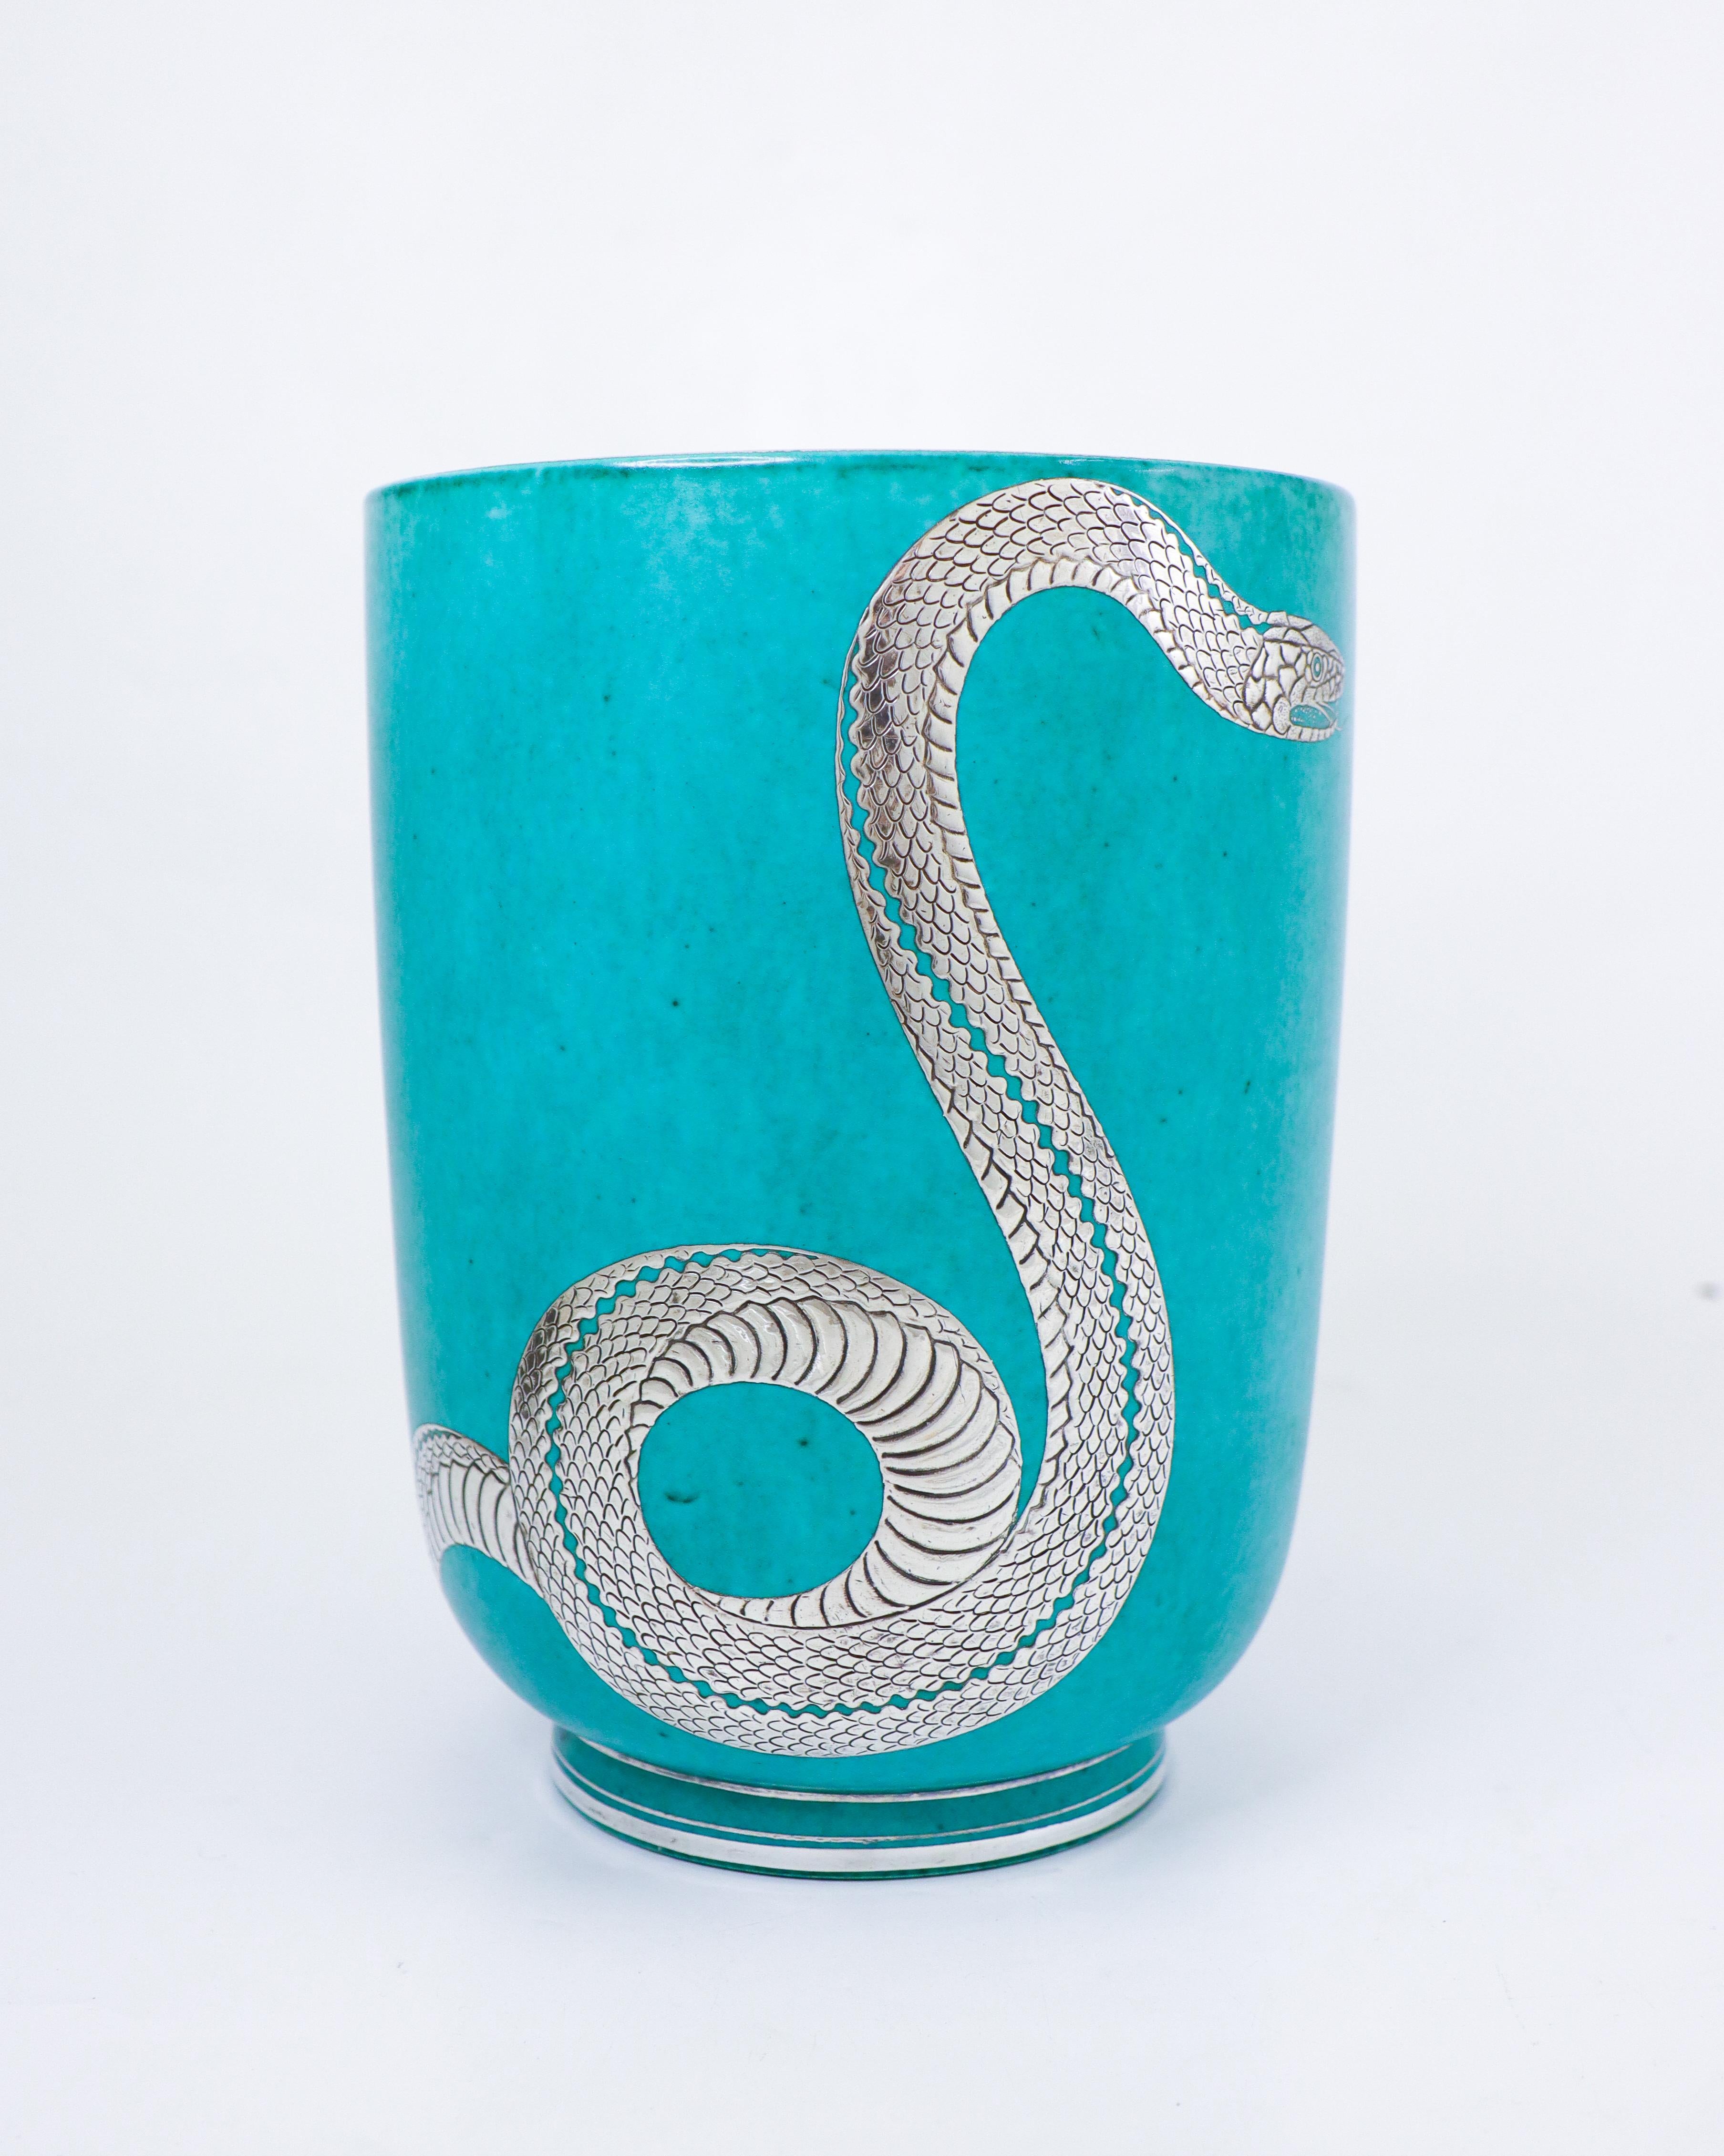 Eine wirklich seltene Vase des Modells Argenta, entworfen von Wilhelm Kåge bei Gustavsberg mit Silberdekor einer Schlange. Die Vase ist 20,5 cm hoch und in ausgezeichnetem Zustand. Gezeichnet Argenta und unten handgedreht.  